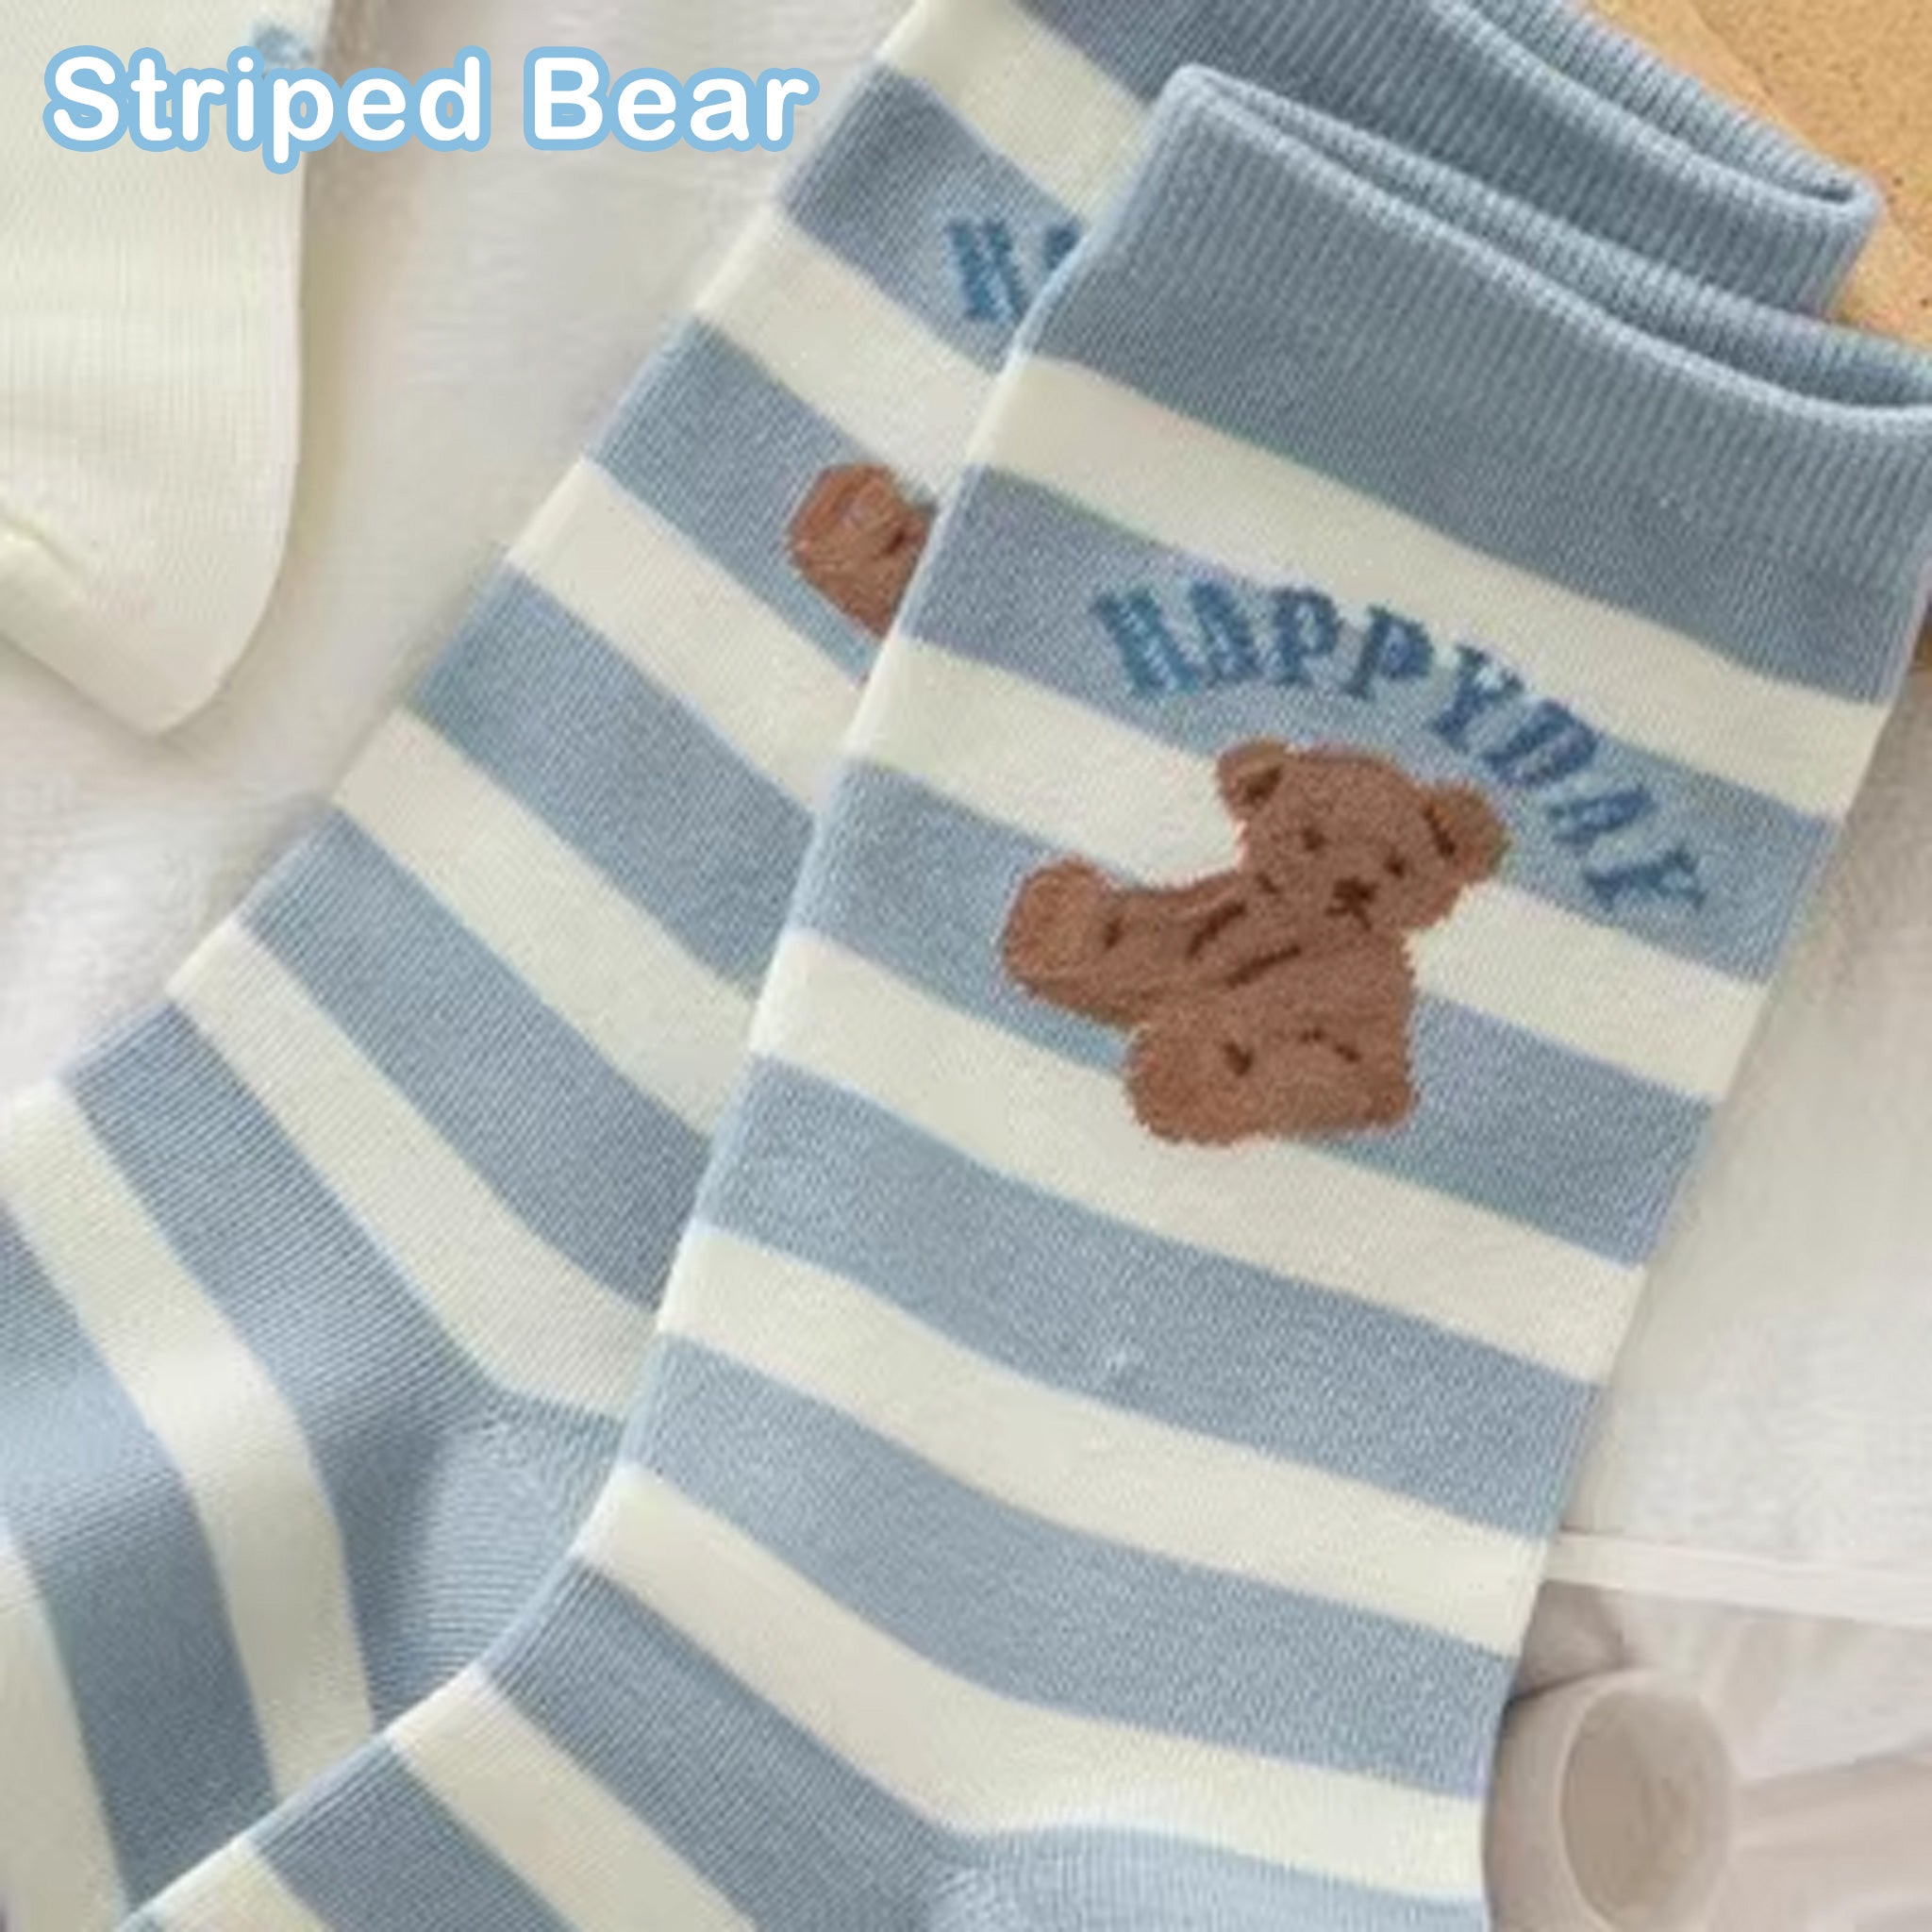 Caramella Mid-Calf Socks Blue Bear